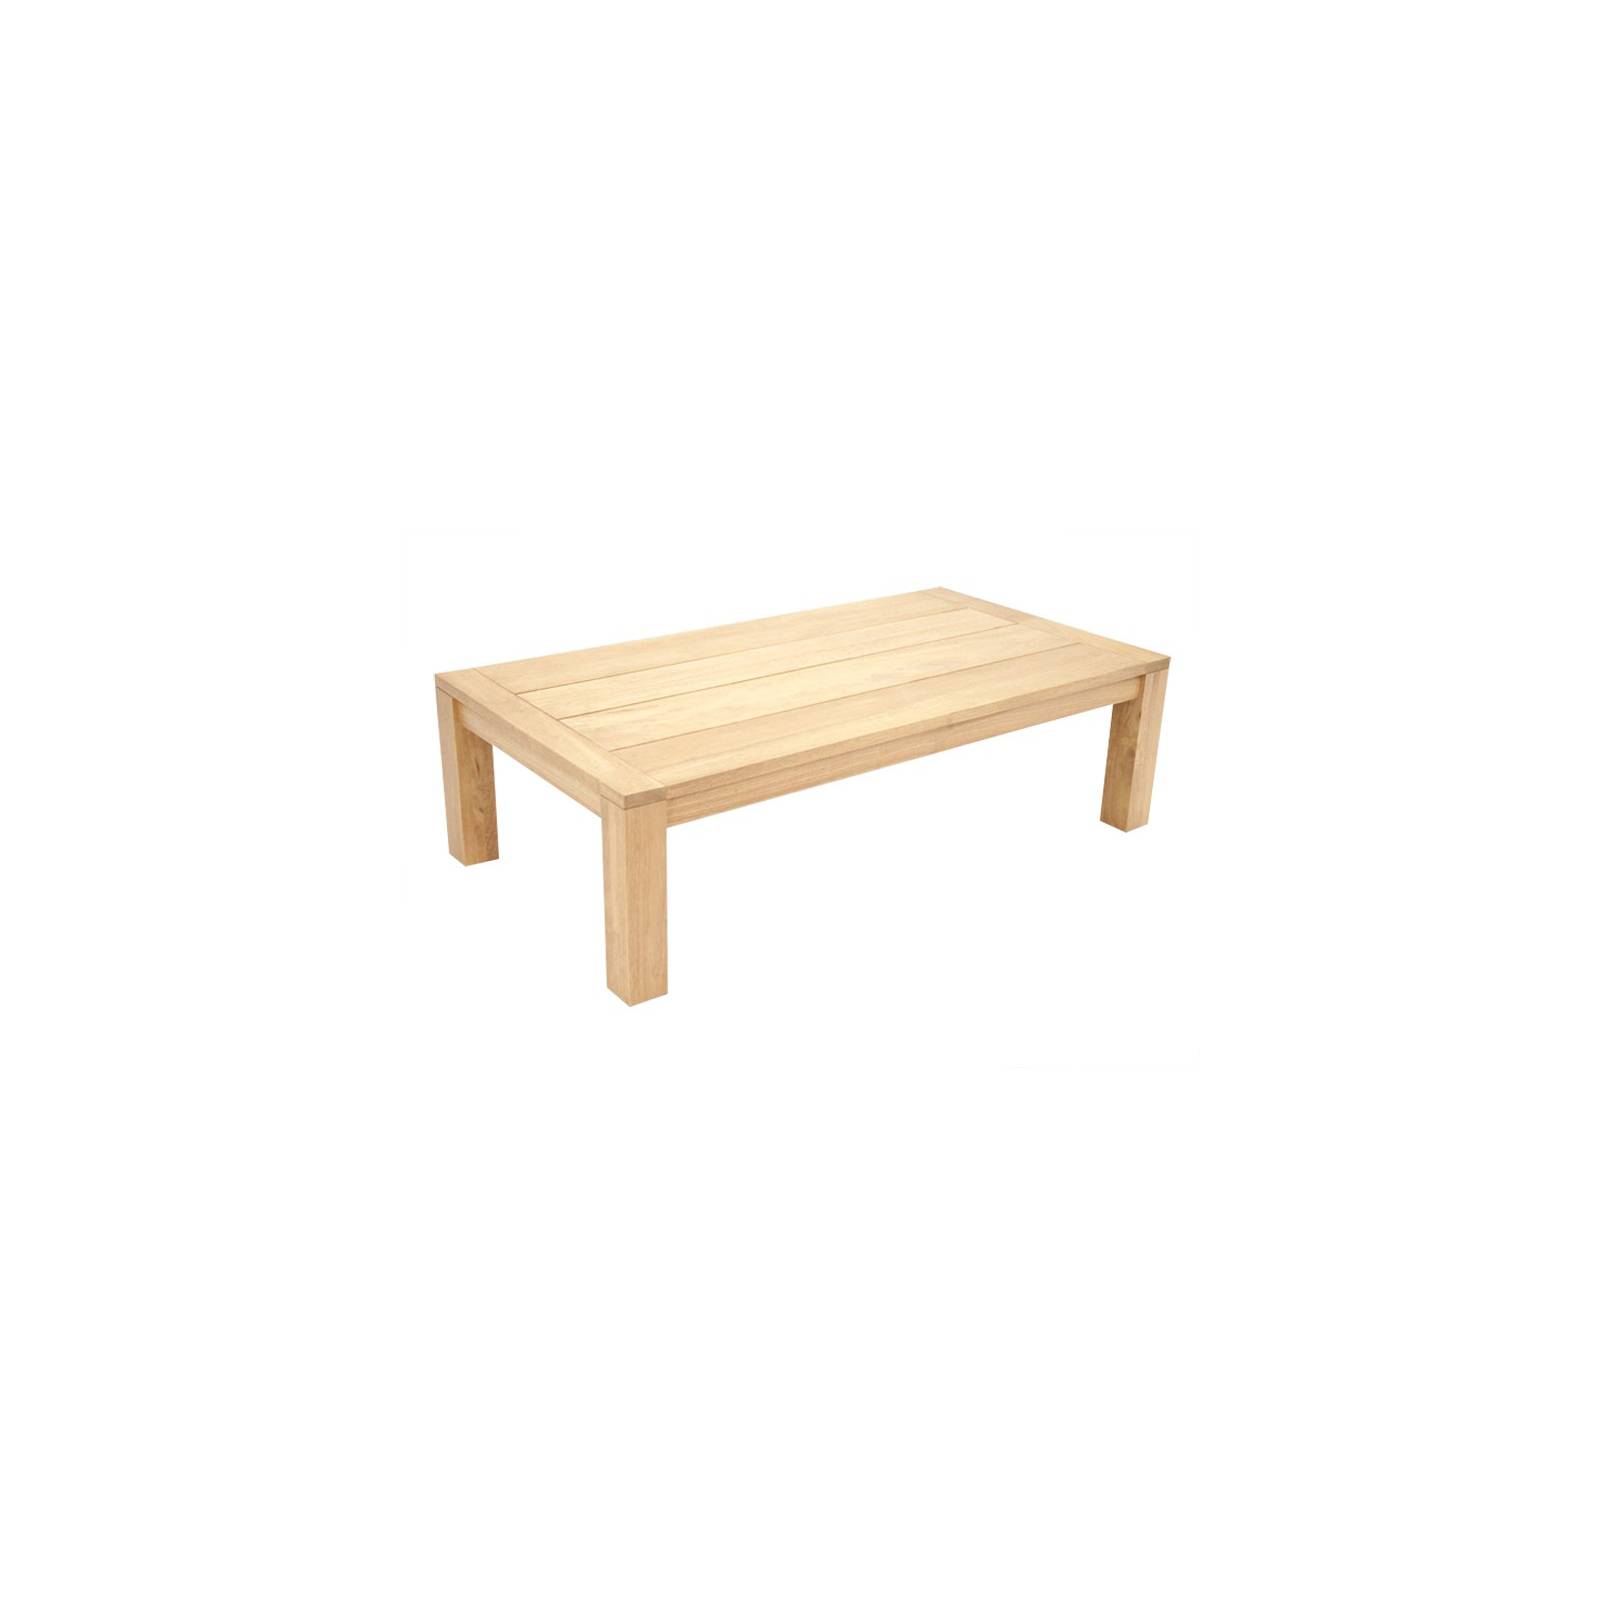 Table Rectangulaire Broadway Hévéa - meuble bois massif